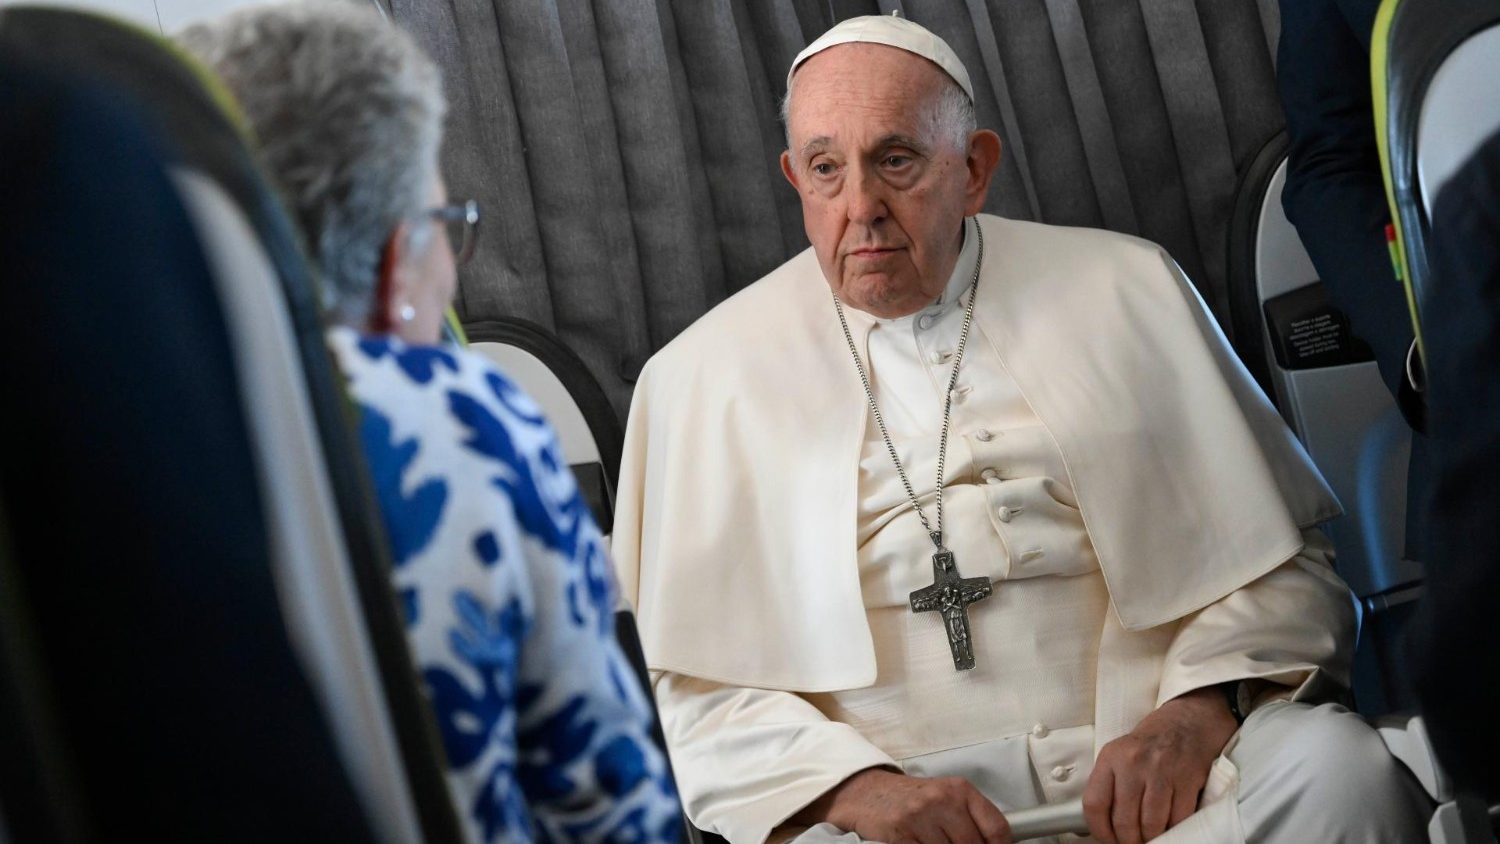 Das 8h às 19h: o Expresso viaja com o Papa Francisco para Portugal